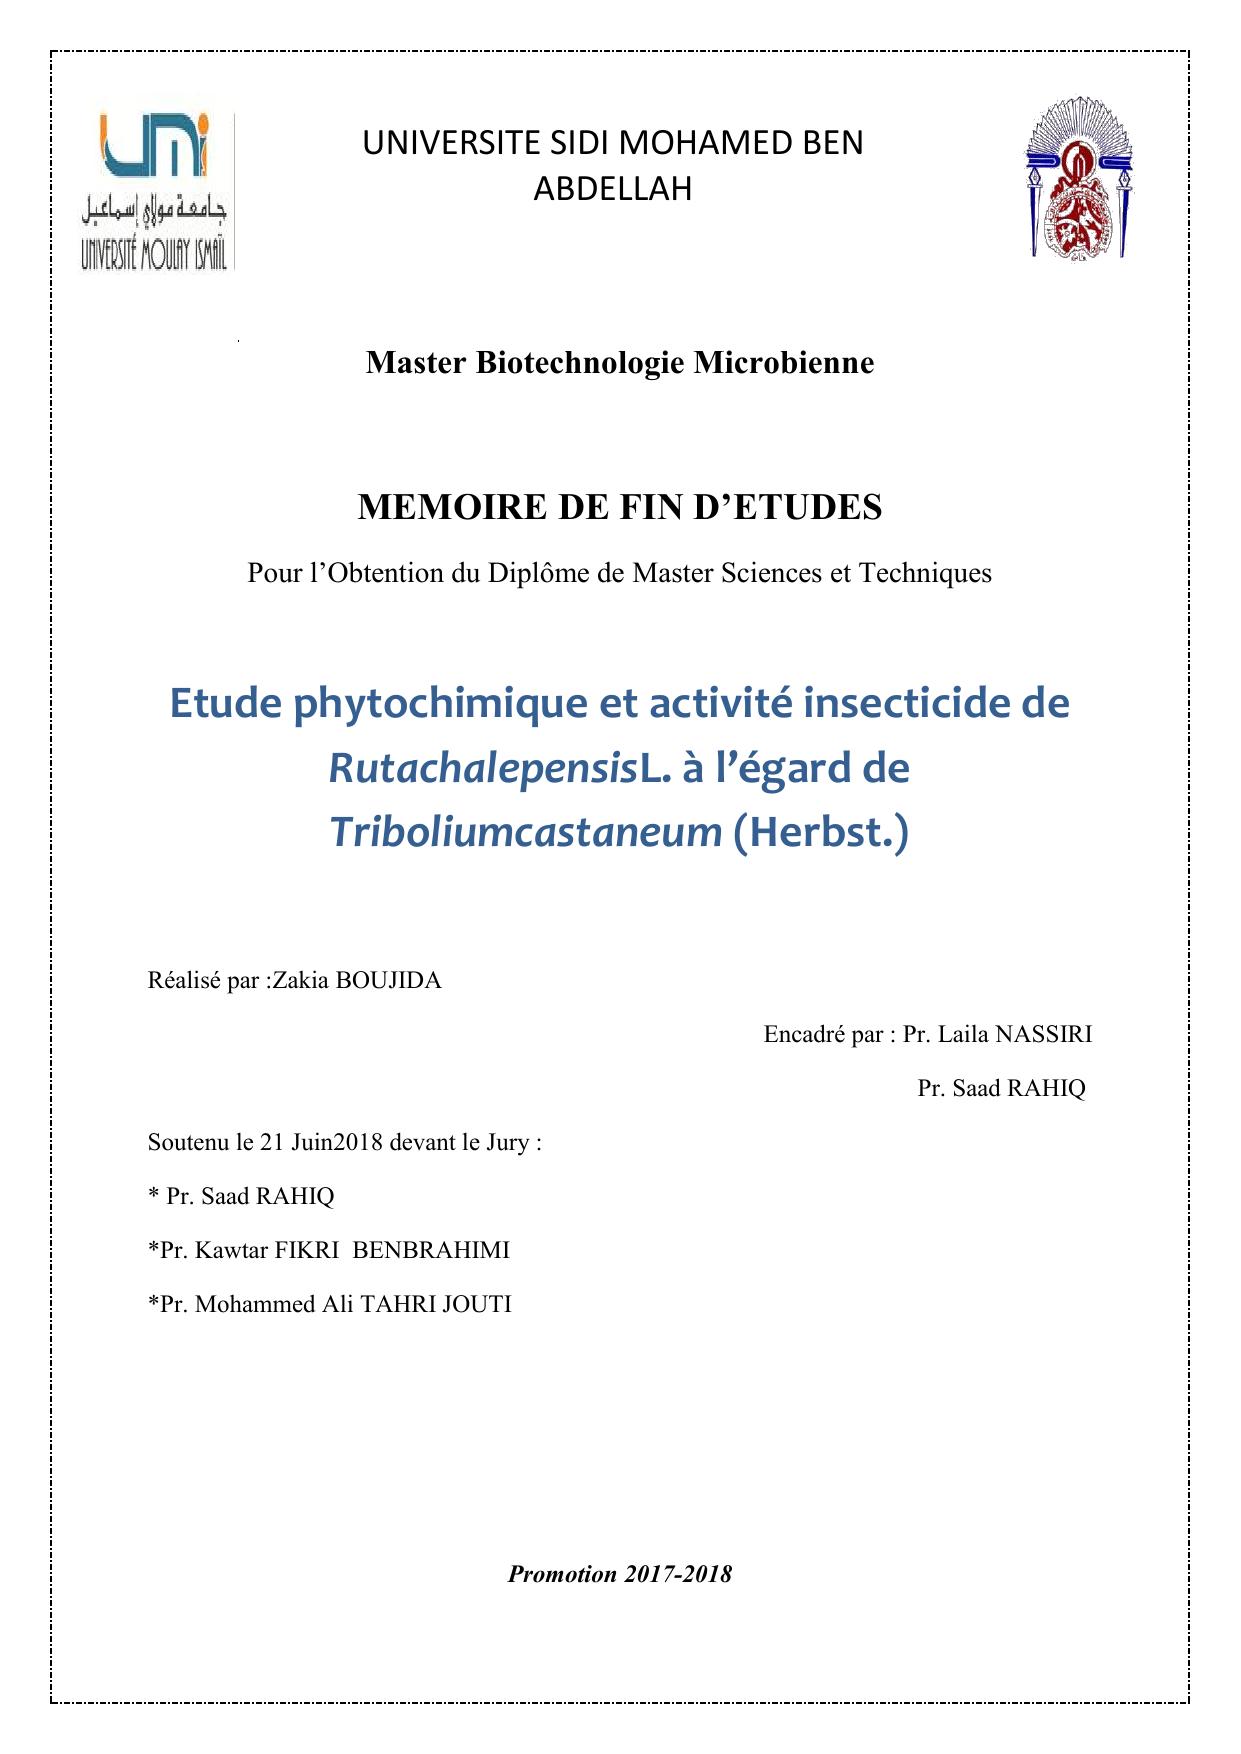 Etude phytochimique et activité insecticide de RutachalepensisL. à l’égard de Triboliumcastaneum (Herbst.)